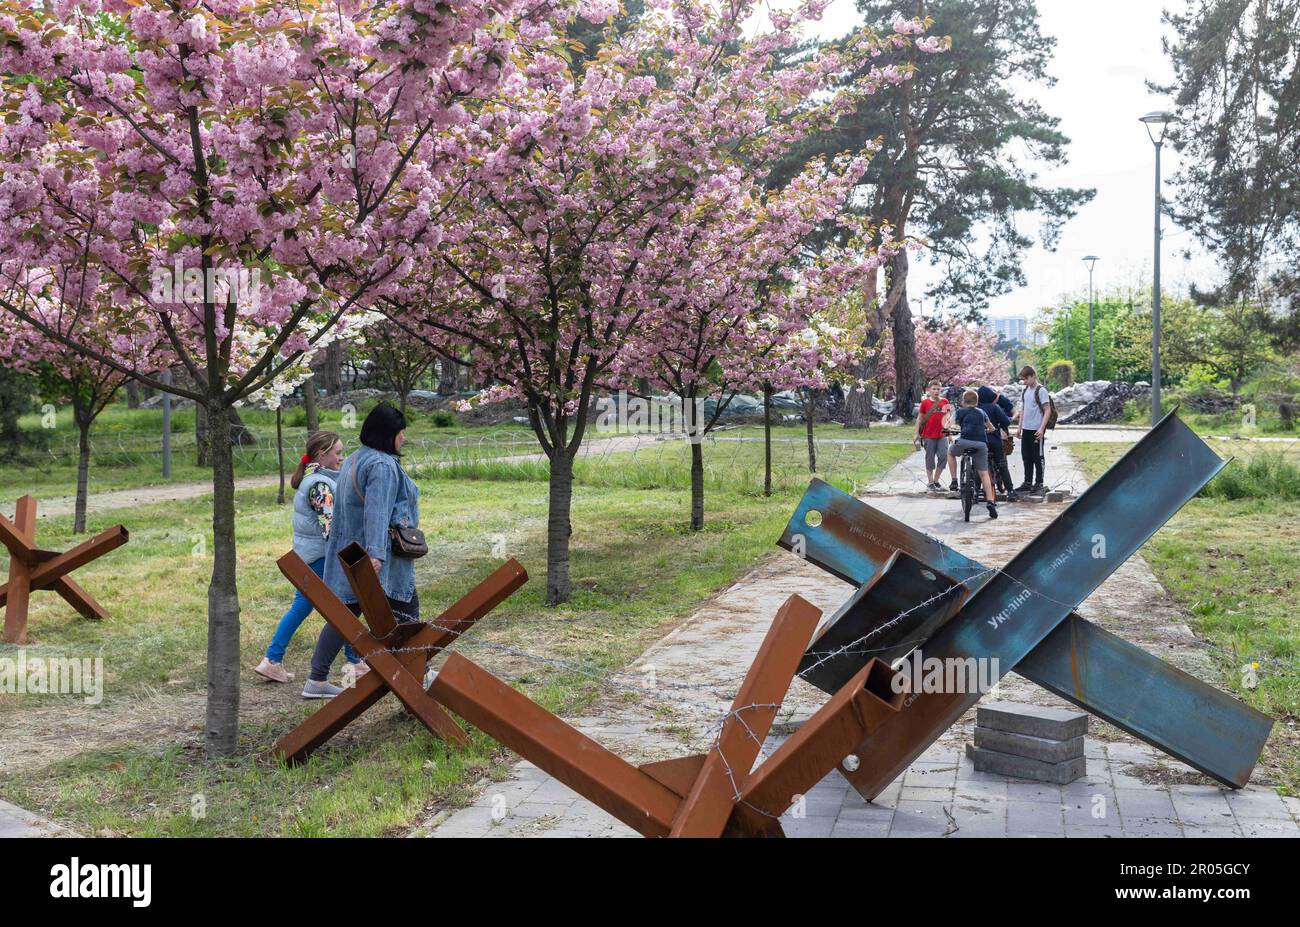 4 mai 2023, Kiev, Ukraine: Un groupe d'adolescents et une mère avec sa fille vus dans le parc près des hérissons anti-chars et des barbelés. Sakura s'est épanouie dans le parc de Kyoto à Kiev. Kyoto Park à Kiev est une petite île japonaise au milieu de la capitale ukrainienne. C'est la plus longue allée de sakura en Ukraine, d'environ un kilomètre de long, a été plantée, les arbres Sakura ne fleurissent pas pendant longtemps - à peine deux semaines de la fin avril au début mai. Le parc de Kyoto était le site de la ligne de défense de Kiev et il y a de nombreuses fortifications. (Credit image: © Mykhaylo Palinchak/SOPA Images via ZUMA Press Wire) ÉDITORIAL USAG Banque D'Images